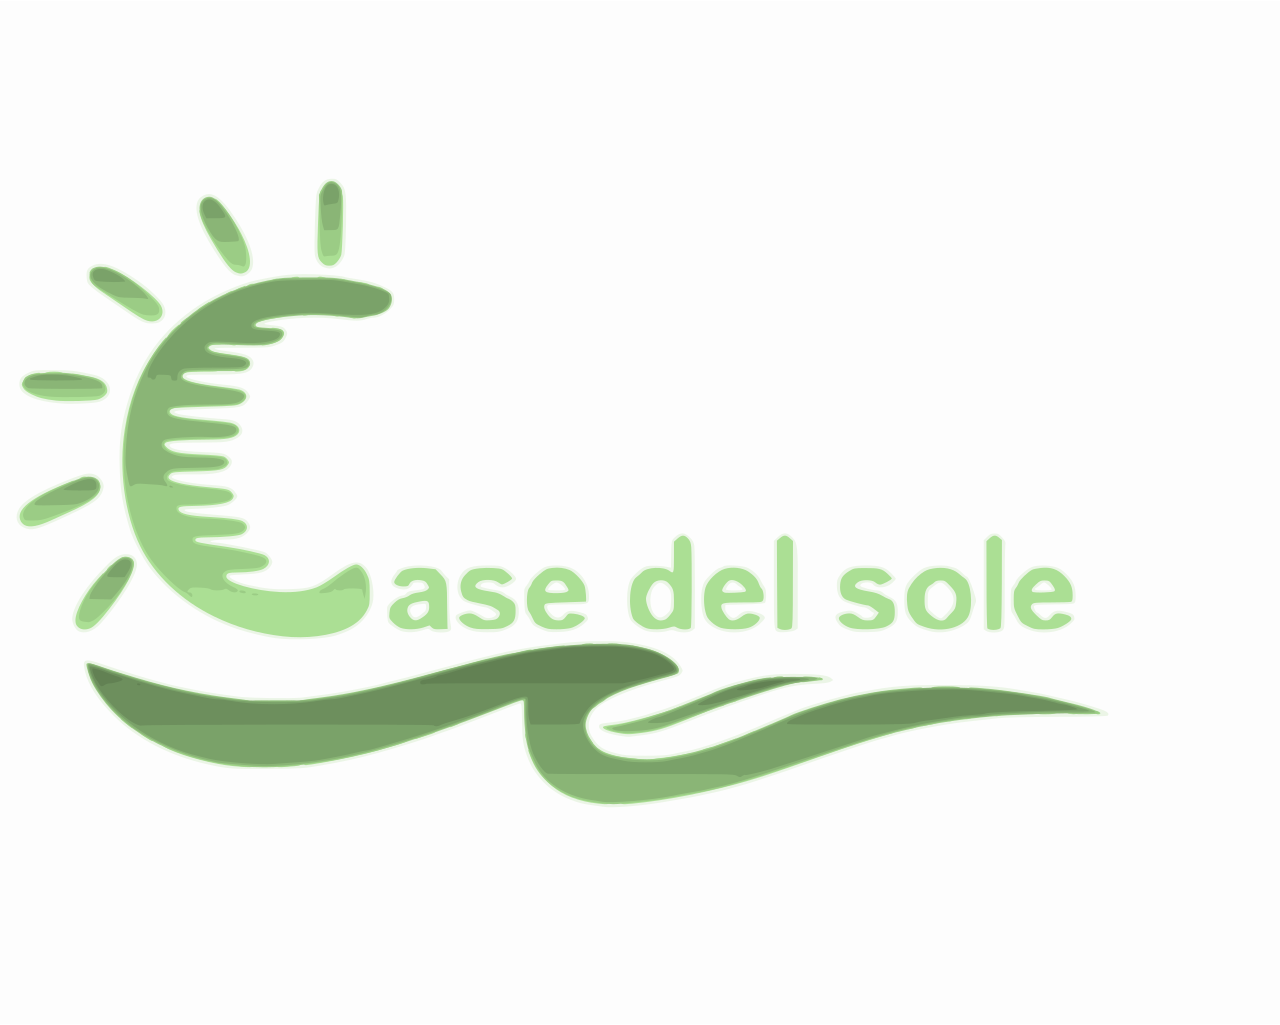 Case del Sole's logo